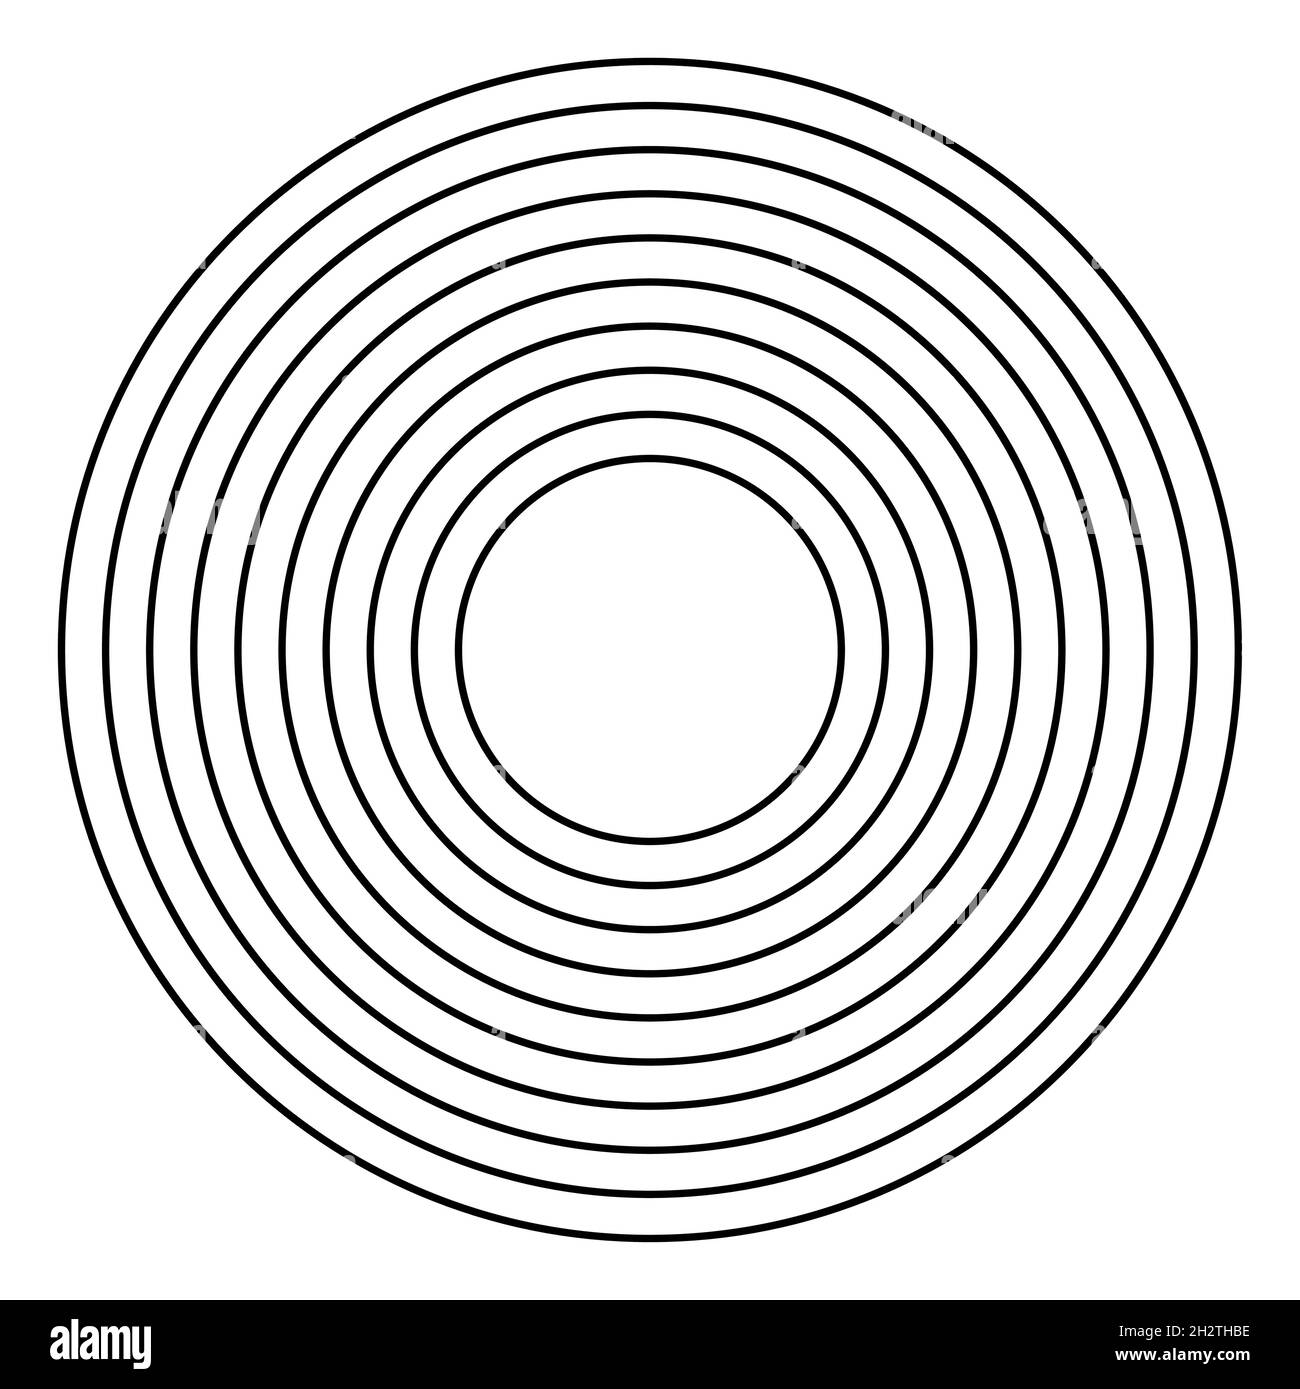 Cerchio. Cerchi neri pochi come cerchi sull'acqua divergono o obiettivo. Uno in uno Illustrazione Vettoriale